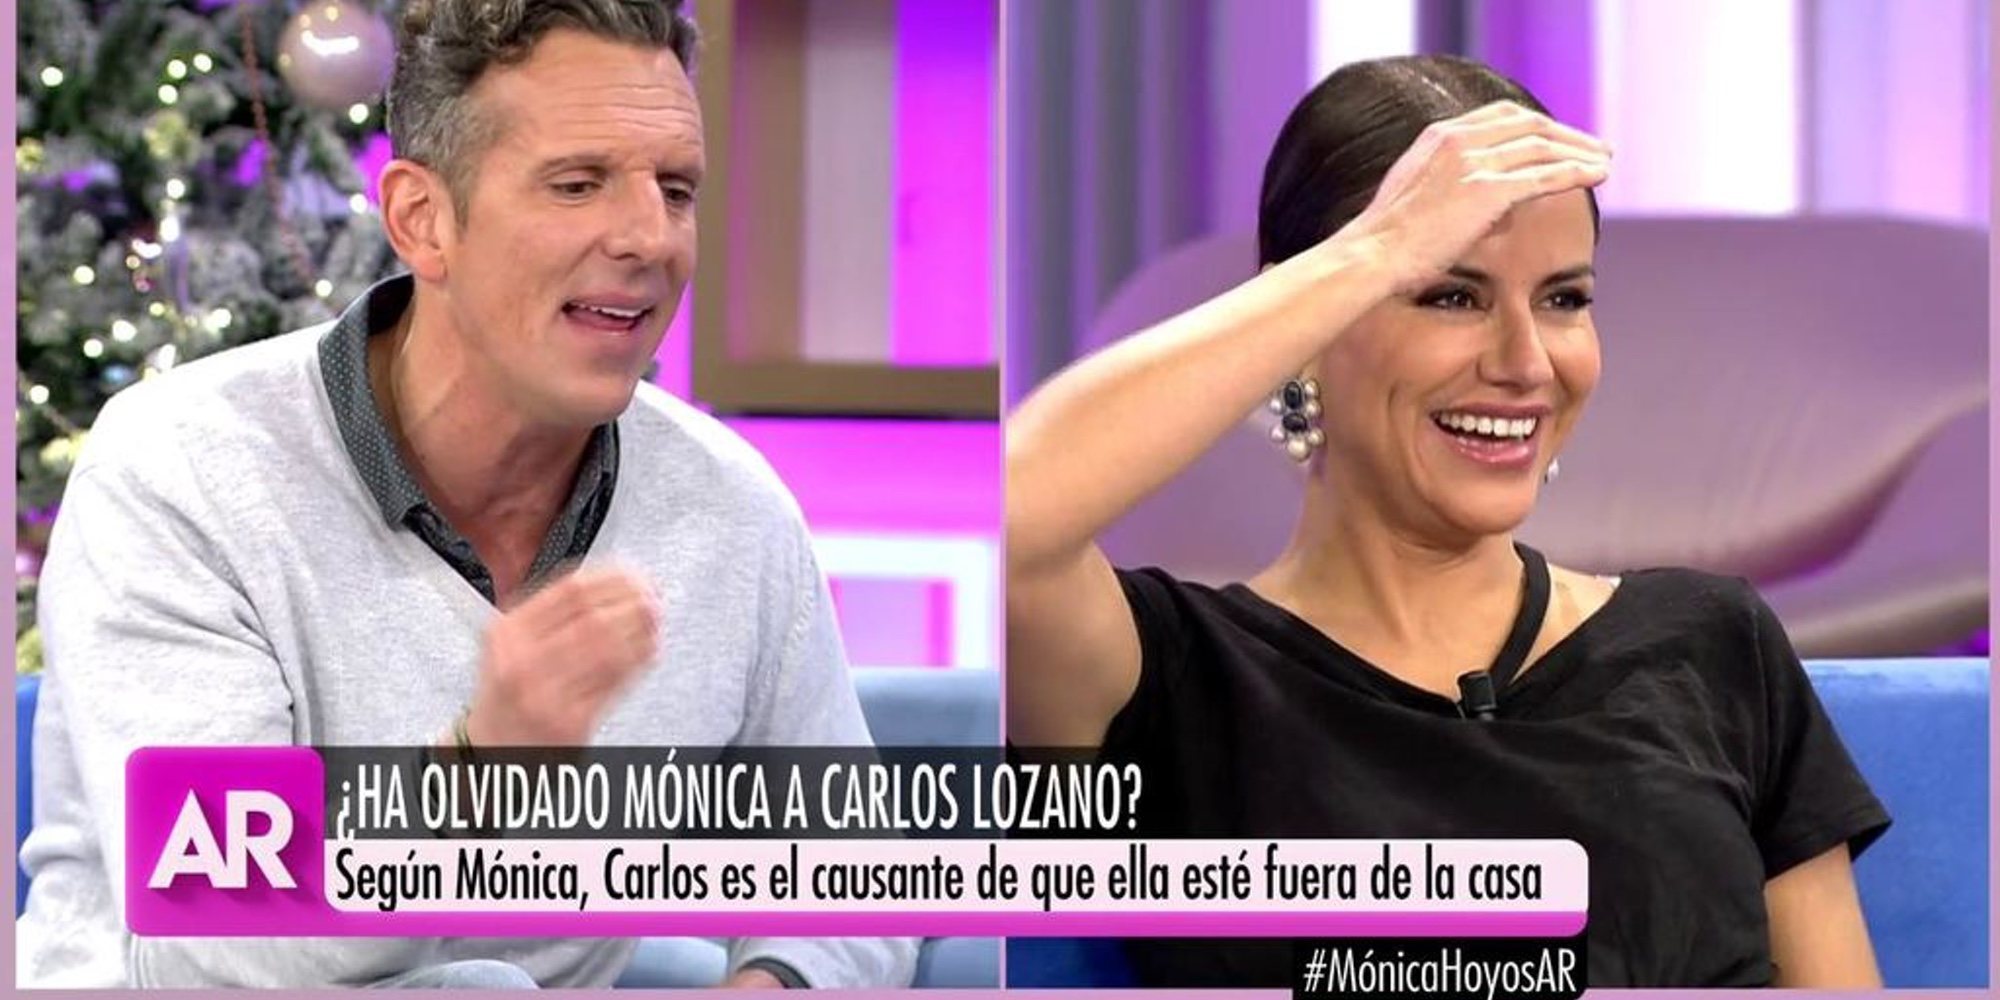 El tenso cara a cara de Mónica Hoyos y Joaquín Prat en directo en 'El programa de Ana Rosa'